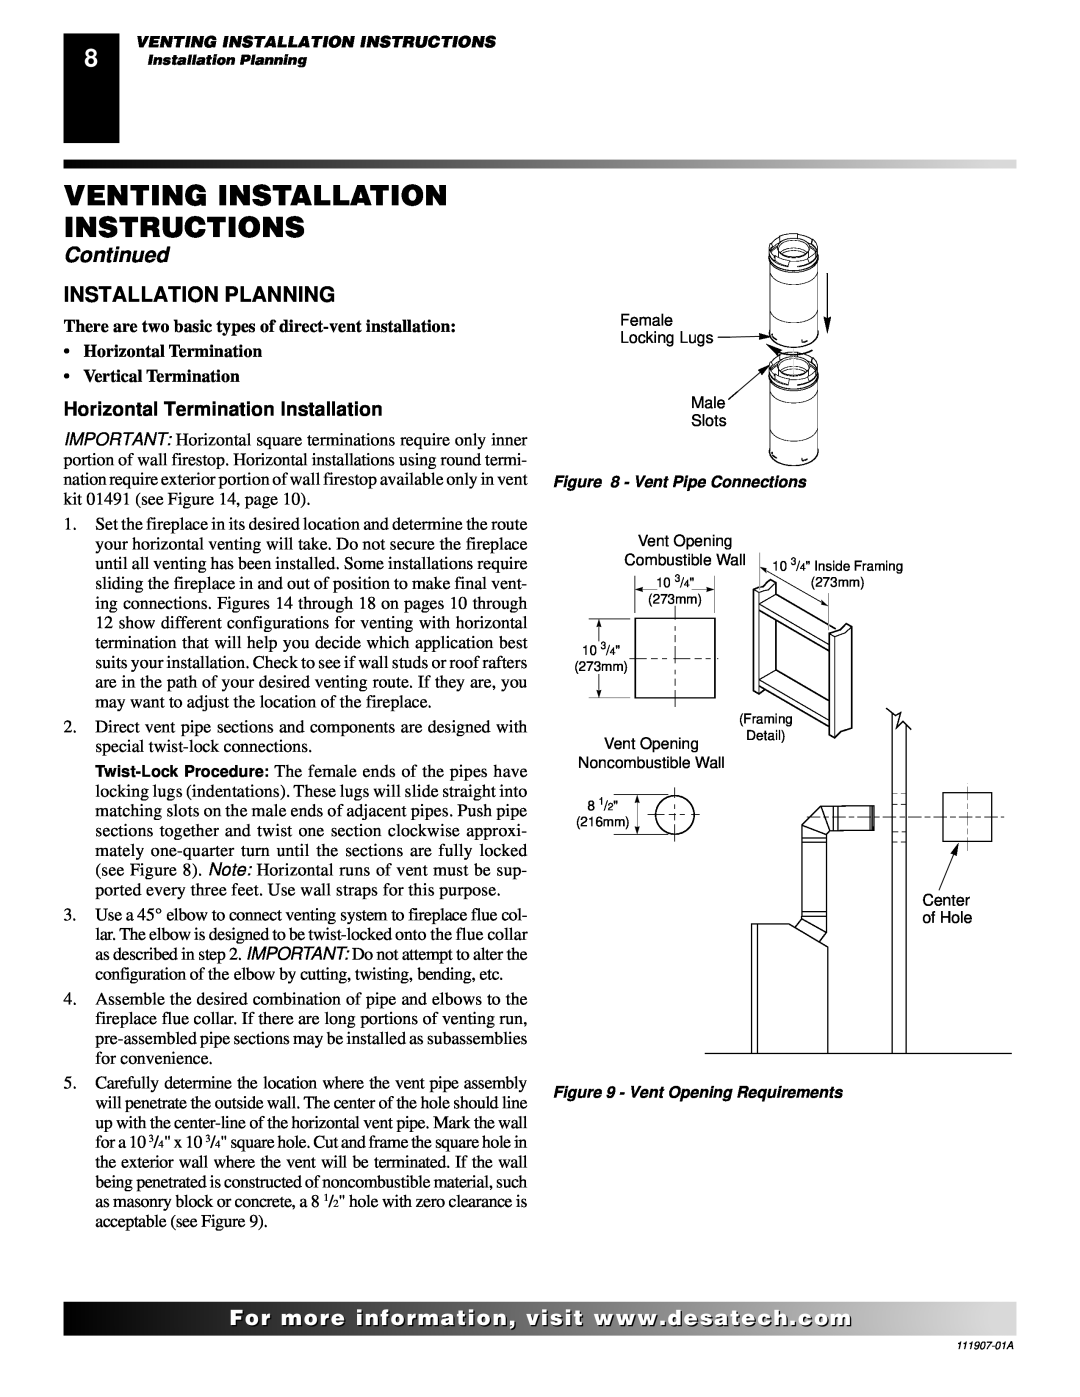 Desa (V)V42ENA(1) Installation Planning, Horizontal Termination Installation, Venting Installation Instructions, Continued 